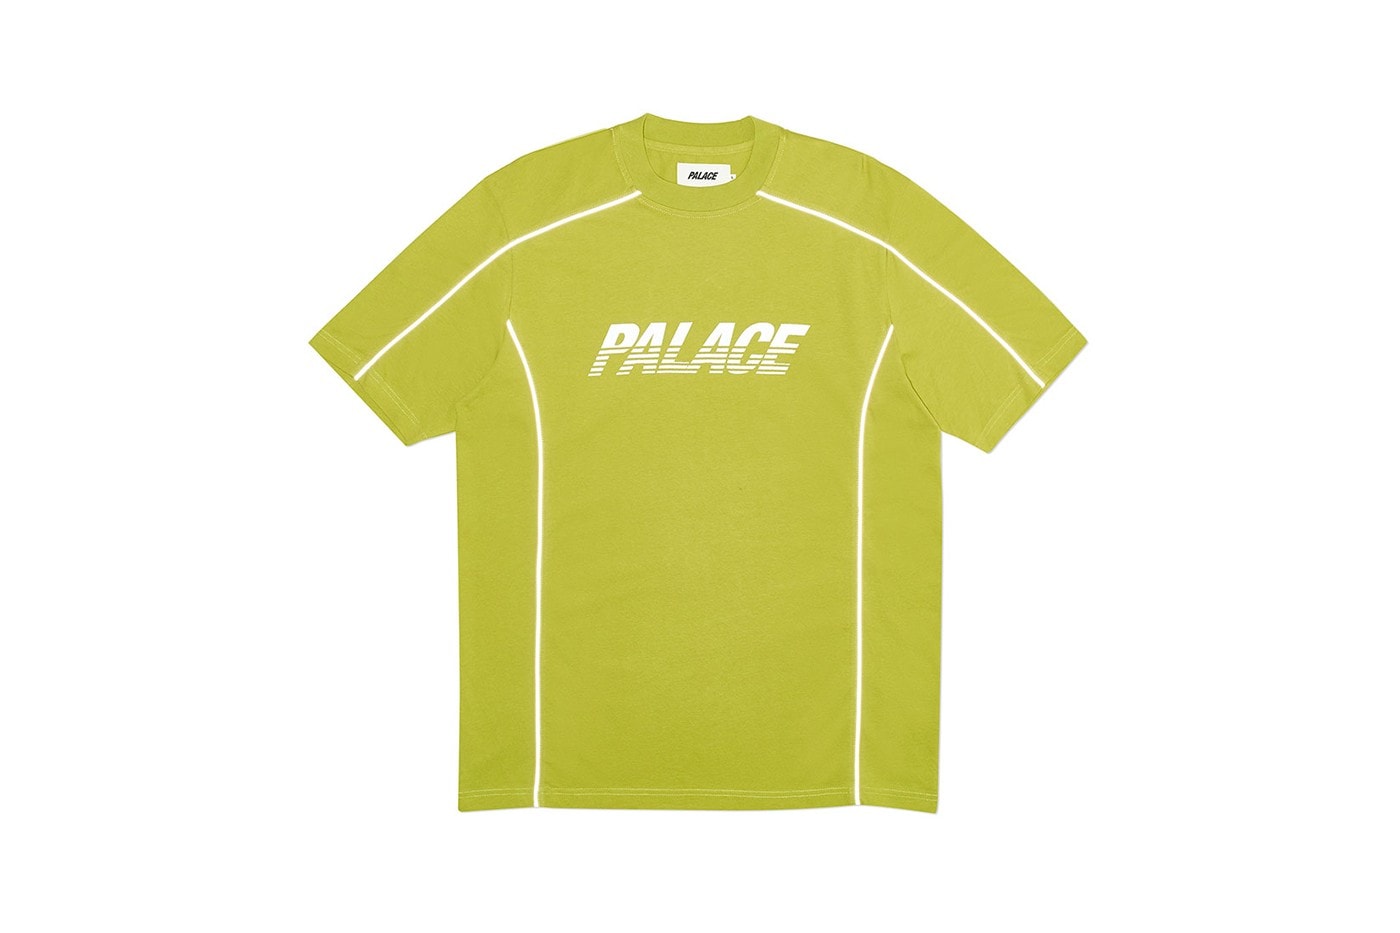 Palace 正式發佈 2019 秋季上衣系列